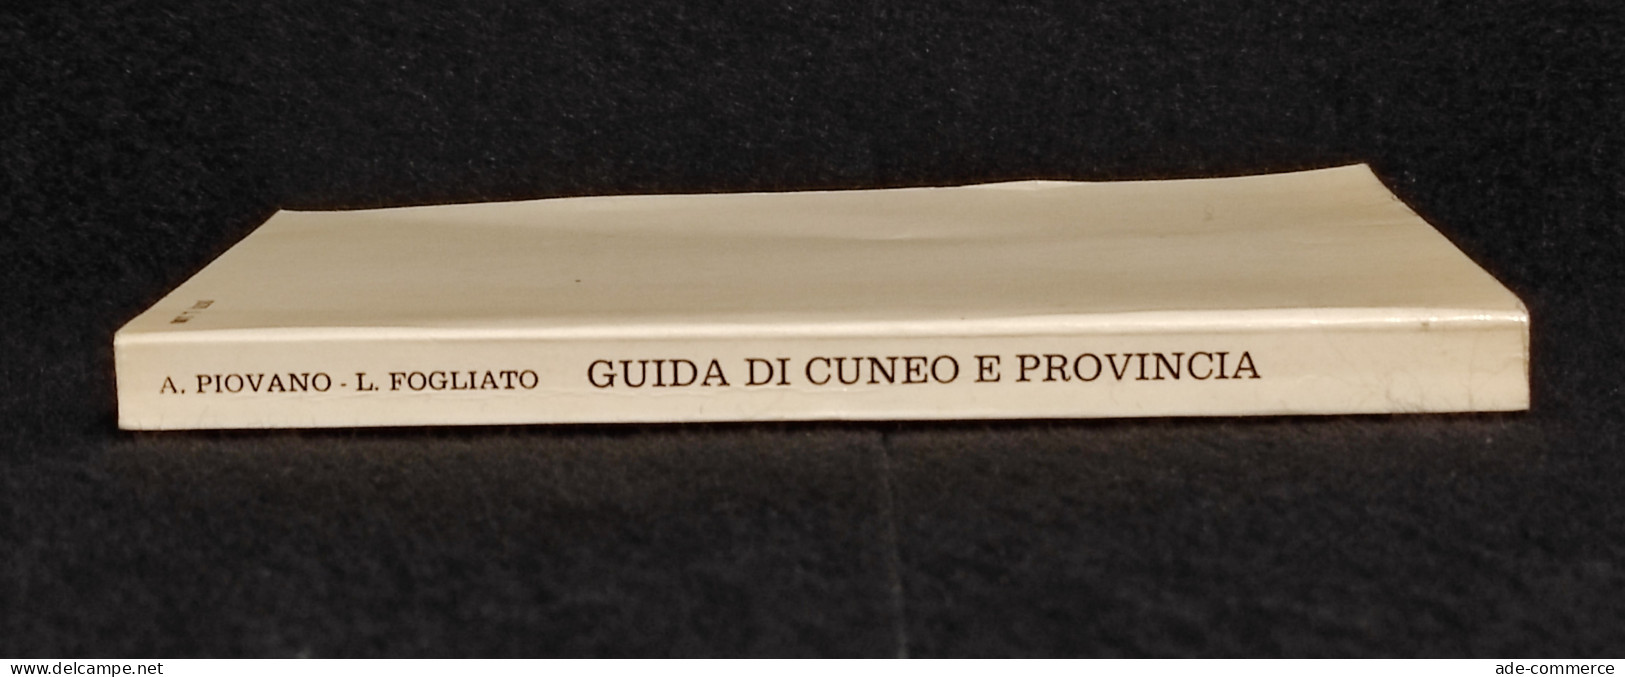 Guida Di Cuneo E Provincia - Turismo Storia-Arte - Ed. Gribaudo - 1977 - Tourismus, Reisen